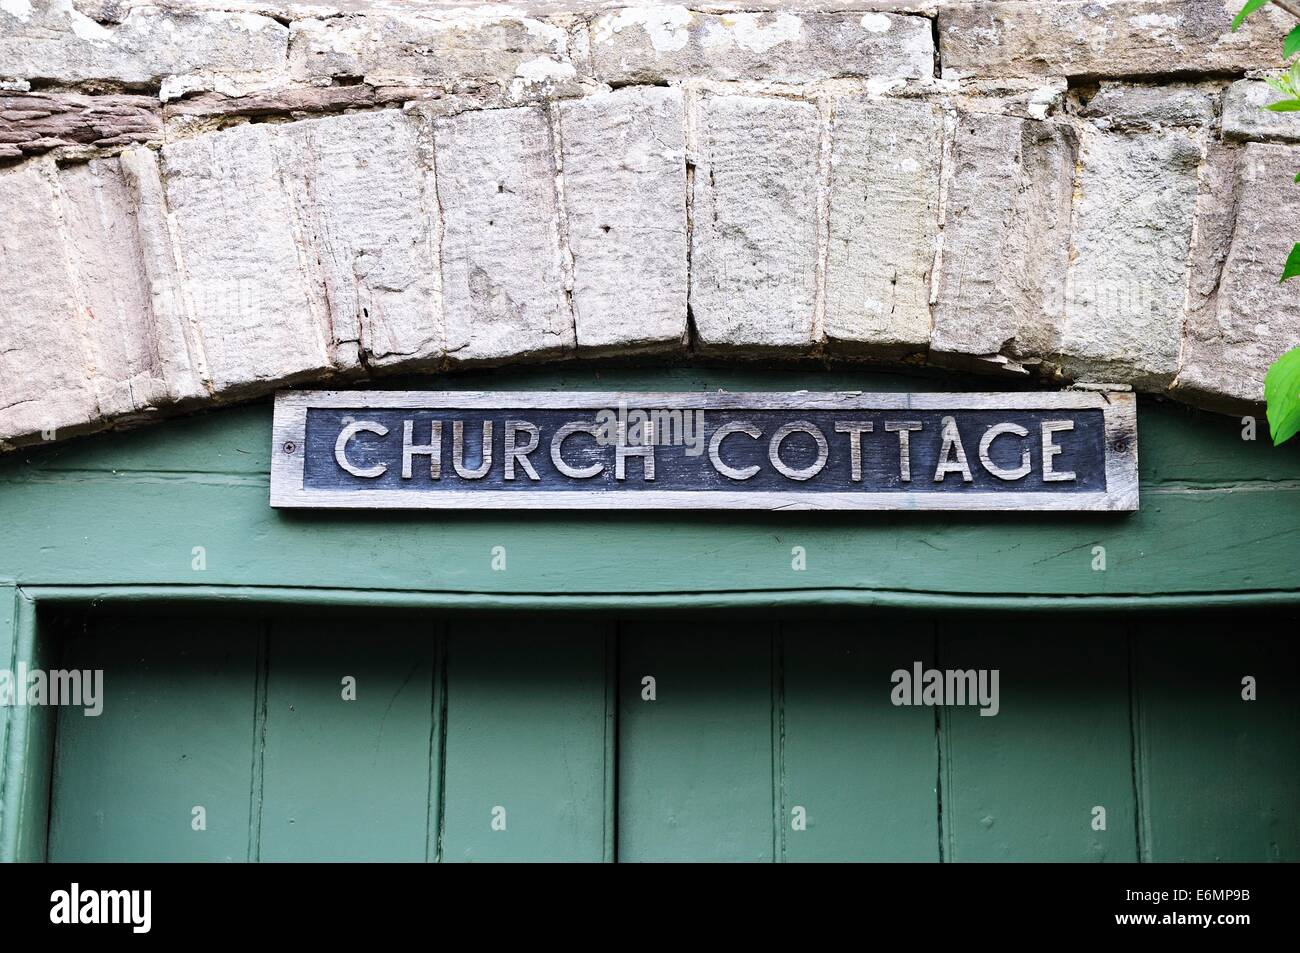 Gîte de l'église un signe au-dessus de la porte verte dans un bâtiment en pierre, Pembridge, Herefordshire, Angleterre, Royaume-Uni, Europe de l'Ouest. Banque D'Images